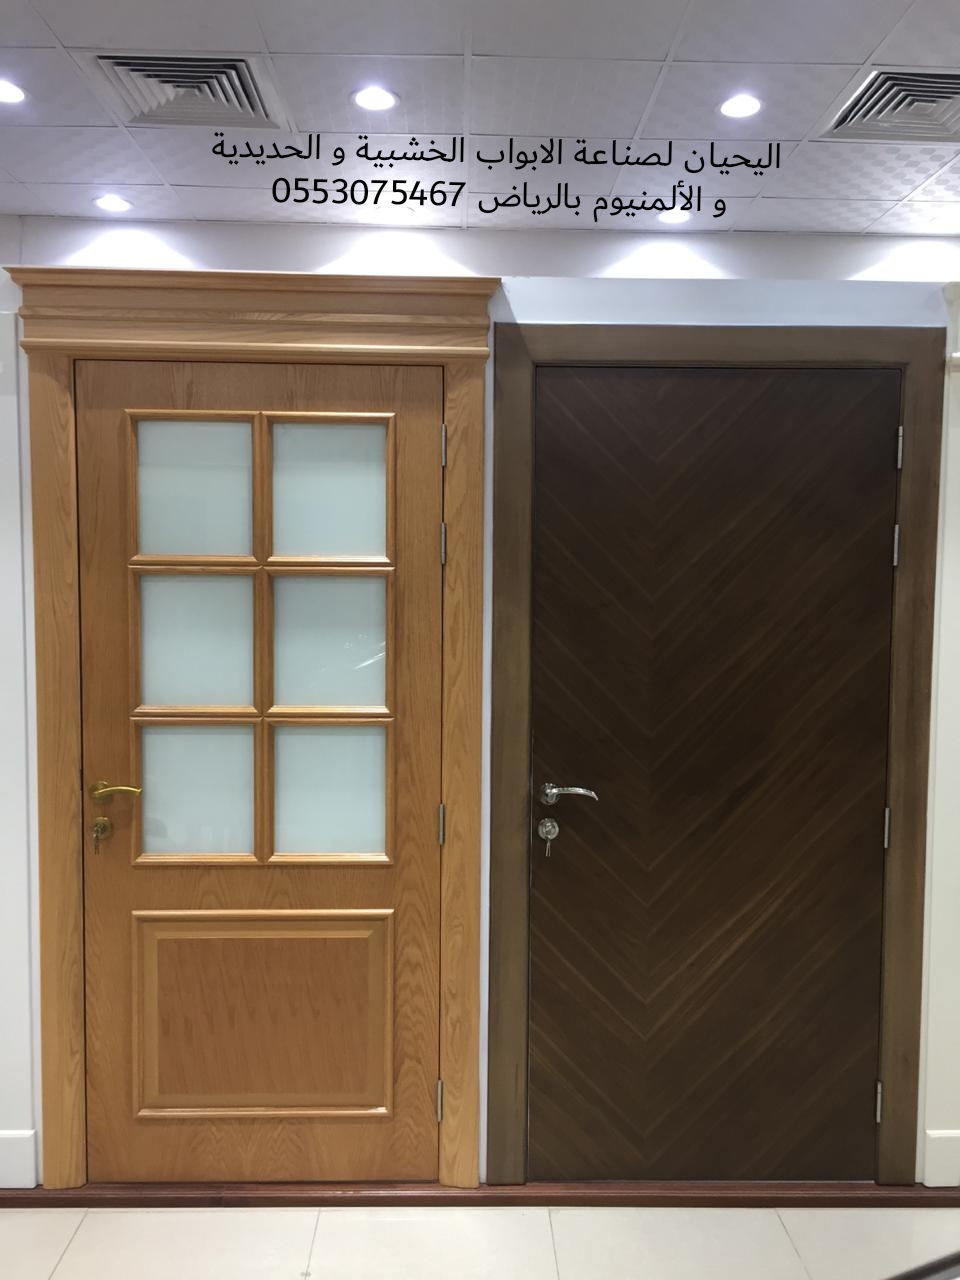 اليحيان لتصنيع وتفصيل أبواب خشب بالرياض 0553075467 أبواب حديد للبيع في الرياض،ابواب ليزر للبيع بالرياض P_1550lxs567